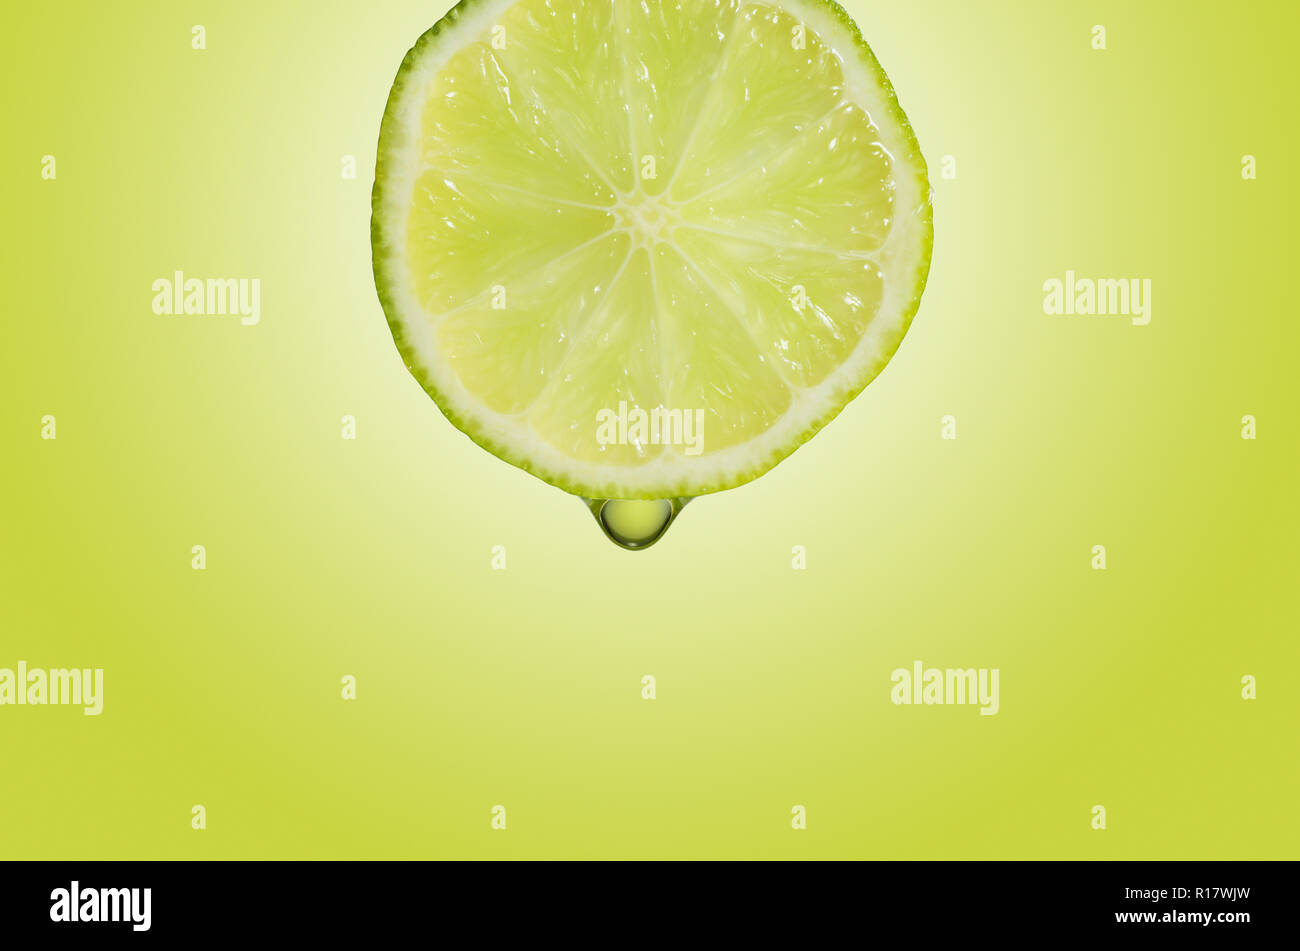 Vista cercana de la rodaja de limón con gota de zumo, fondo verde Foto de stock